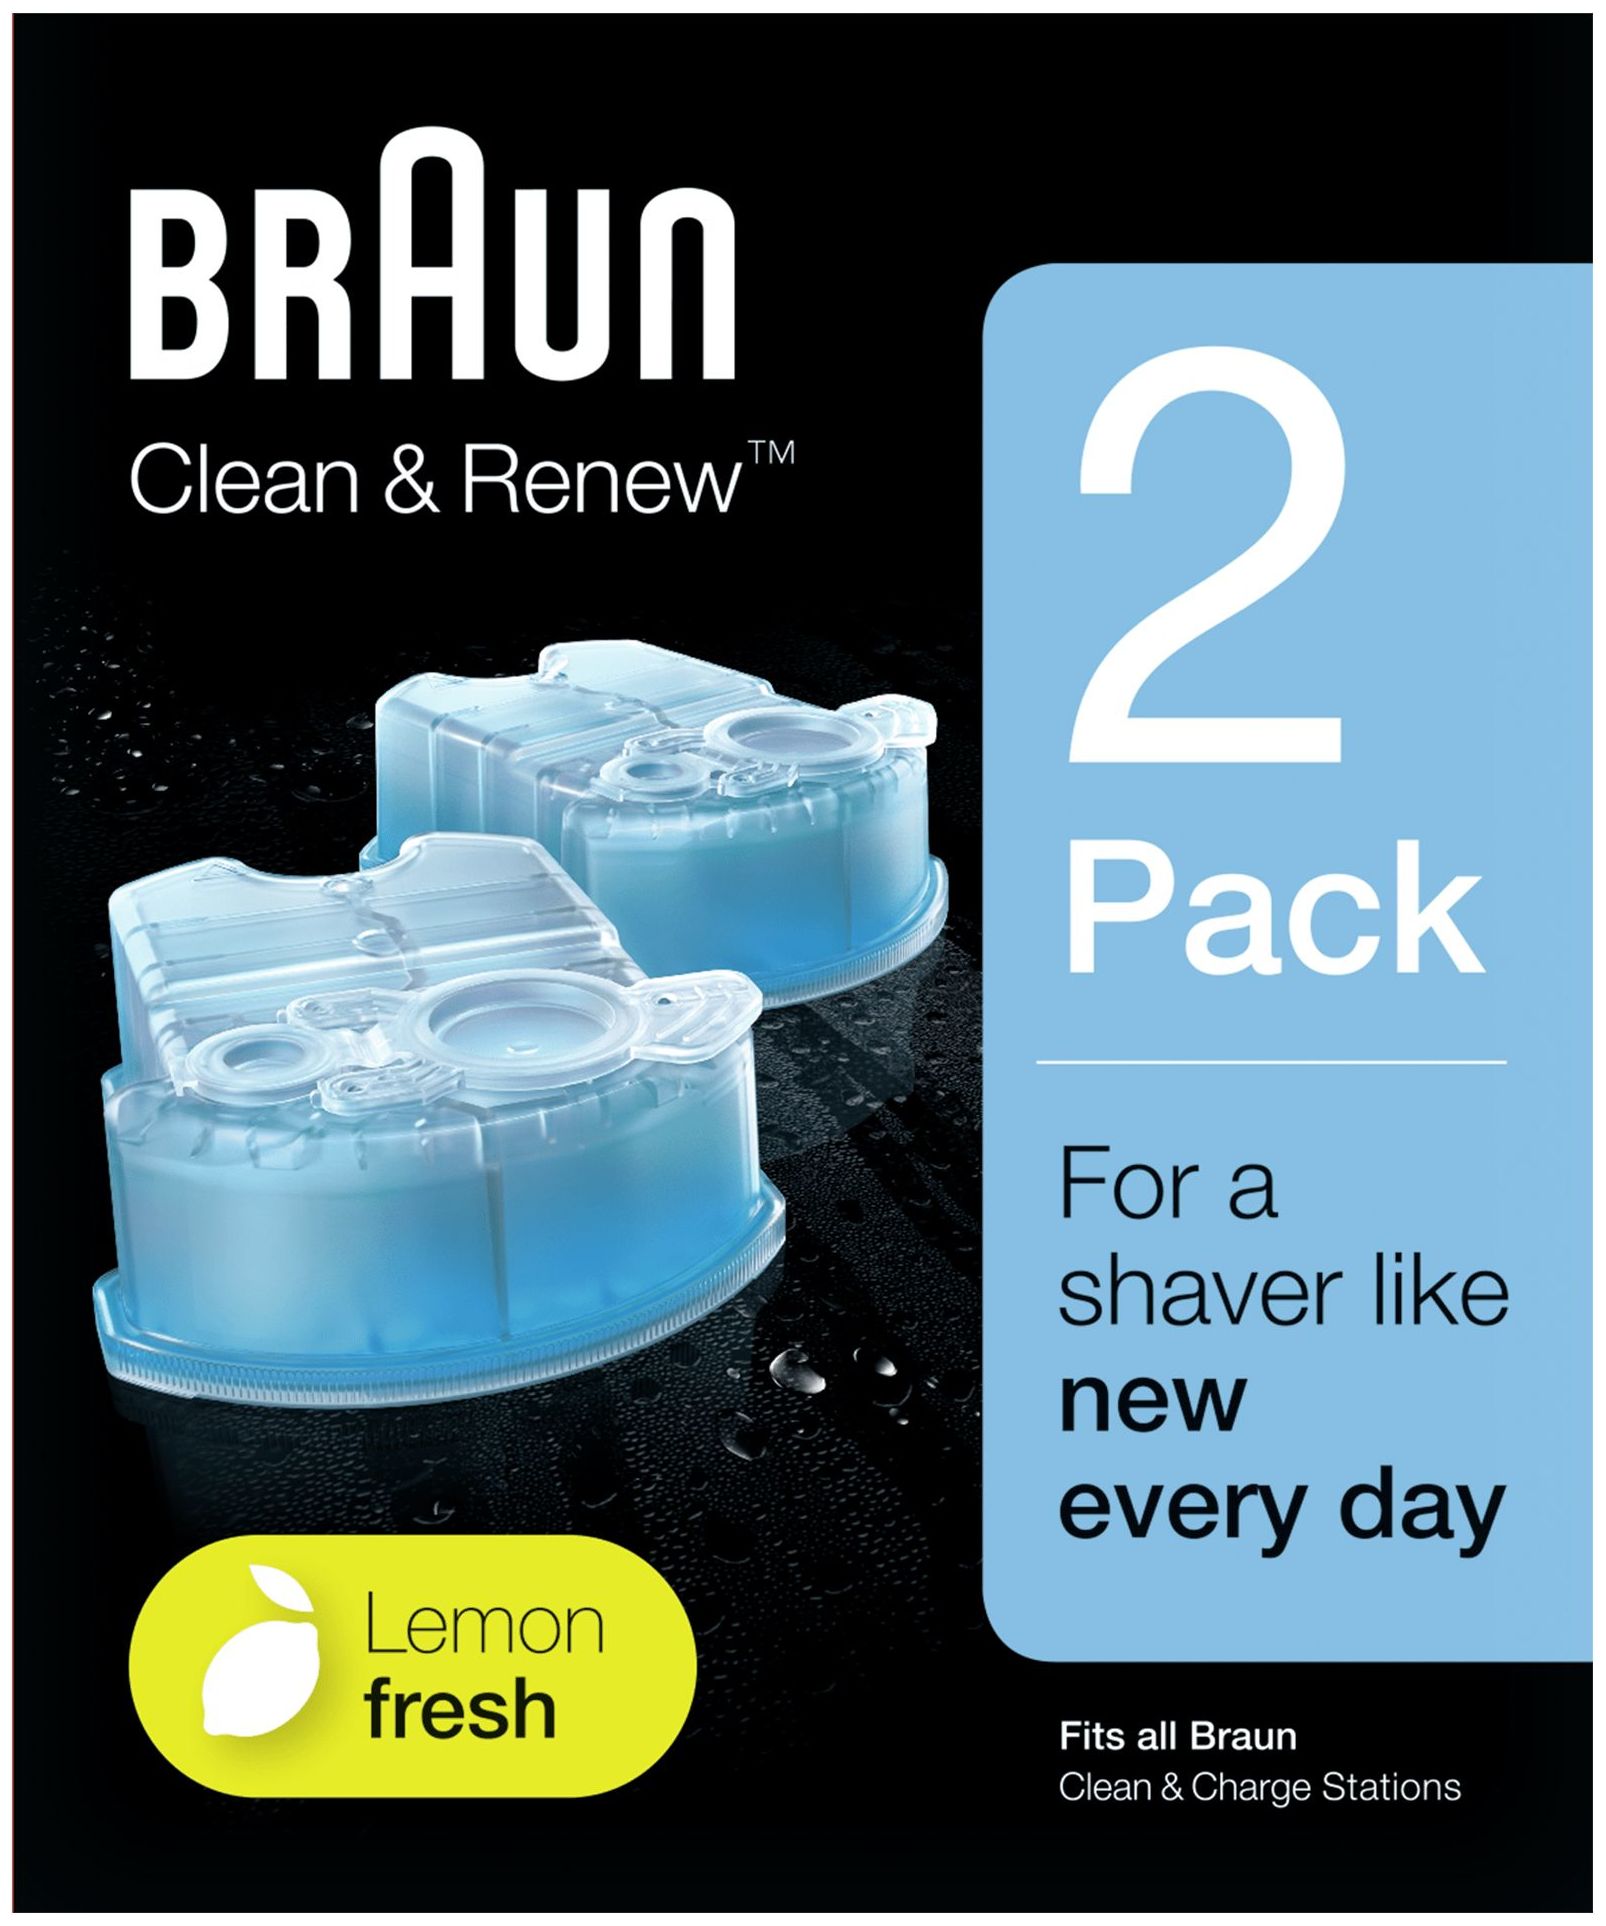 Braun Clean & Renew CCR 5+1 Reinigungskartusche, Blau